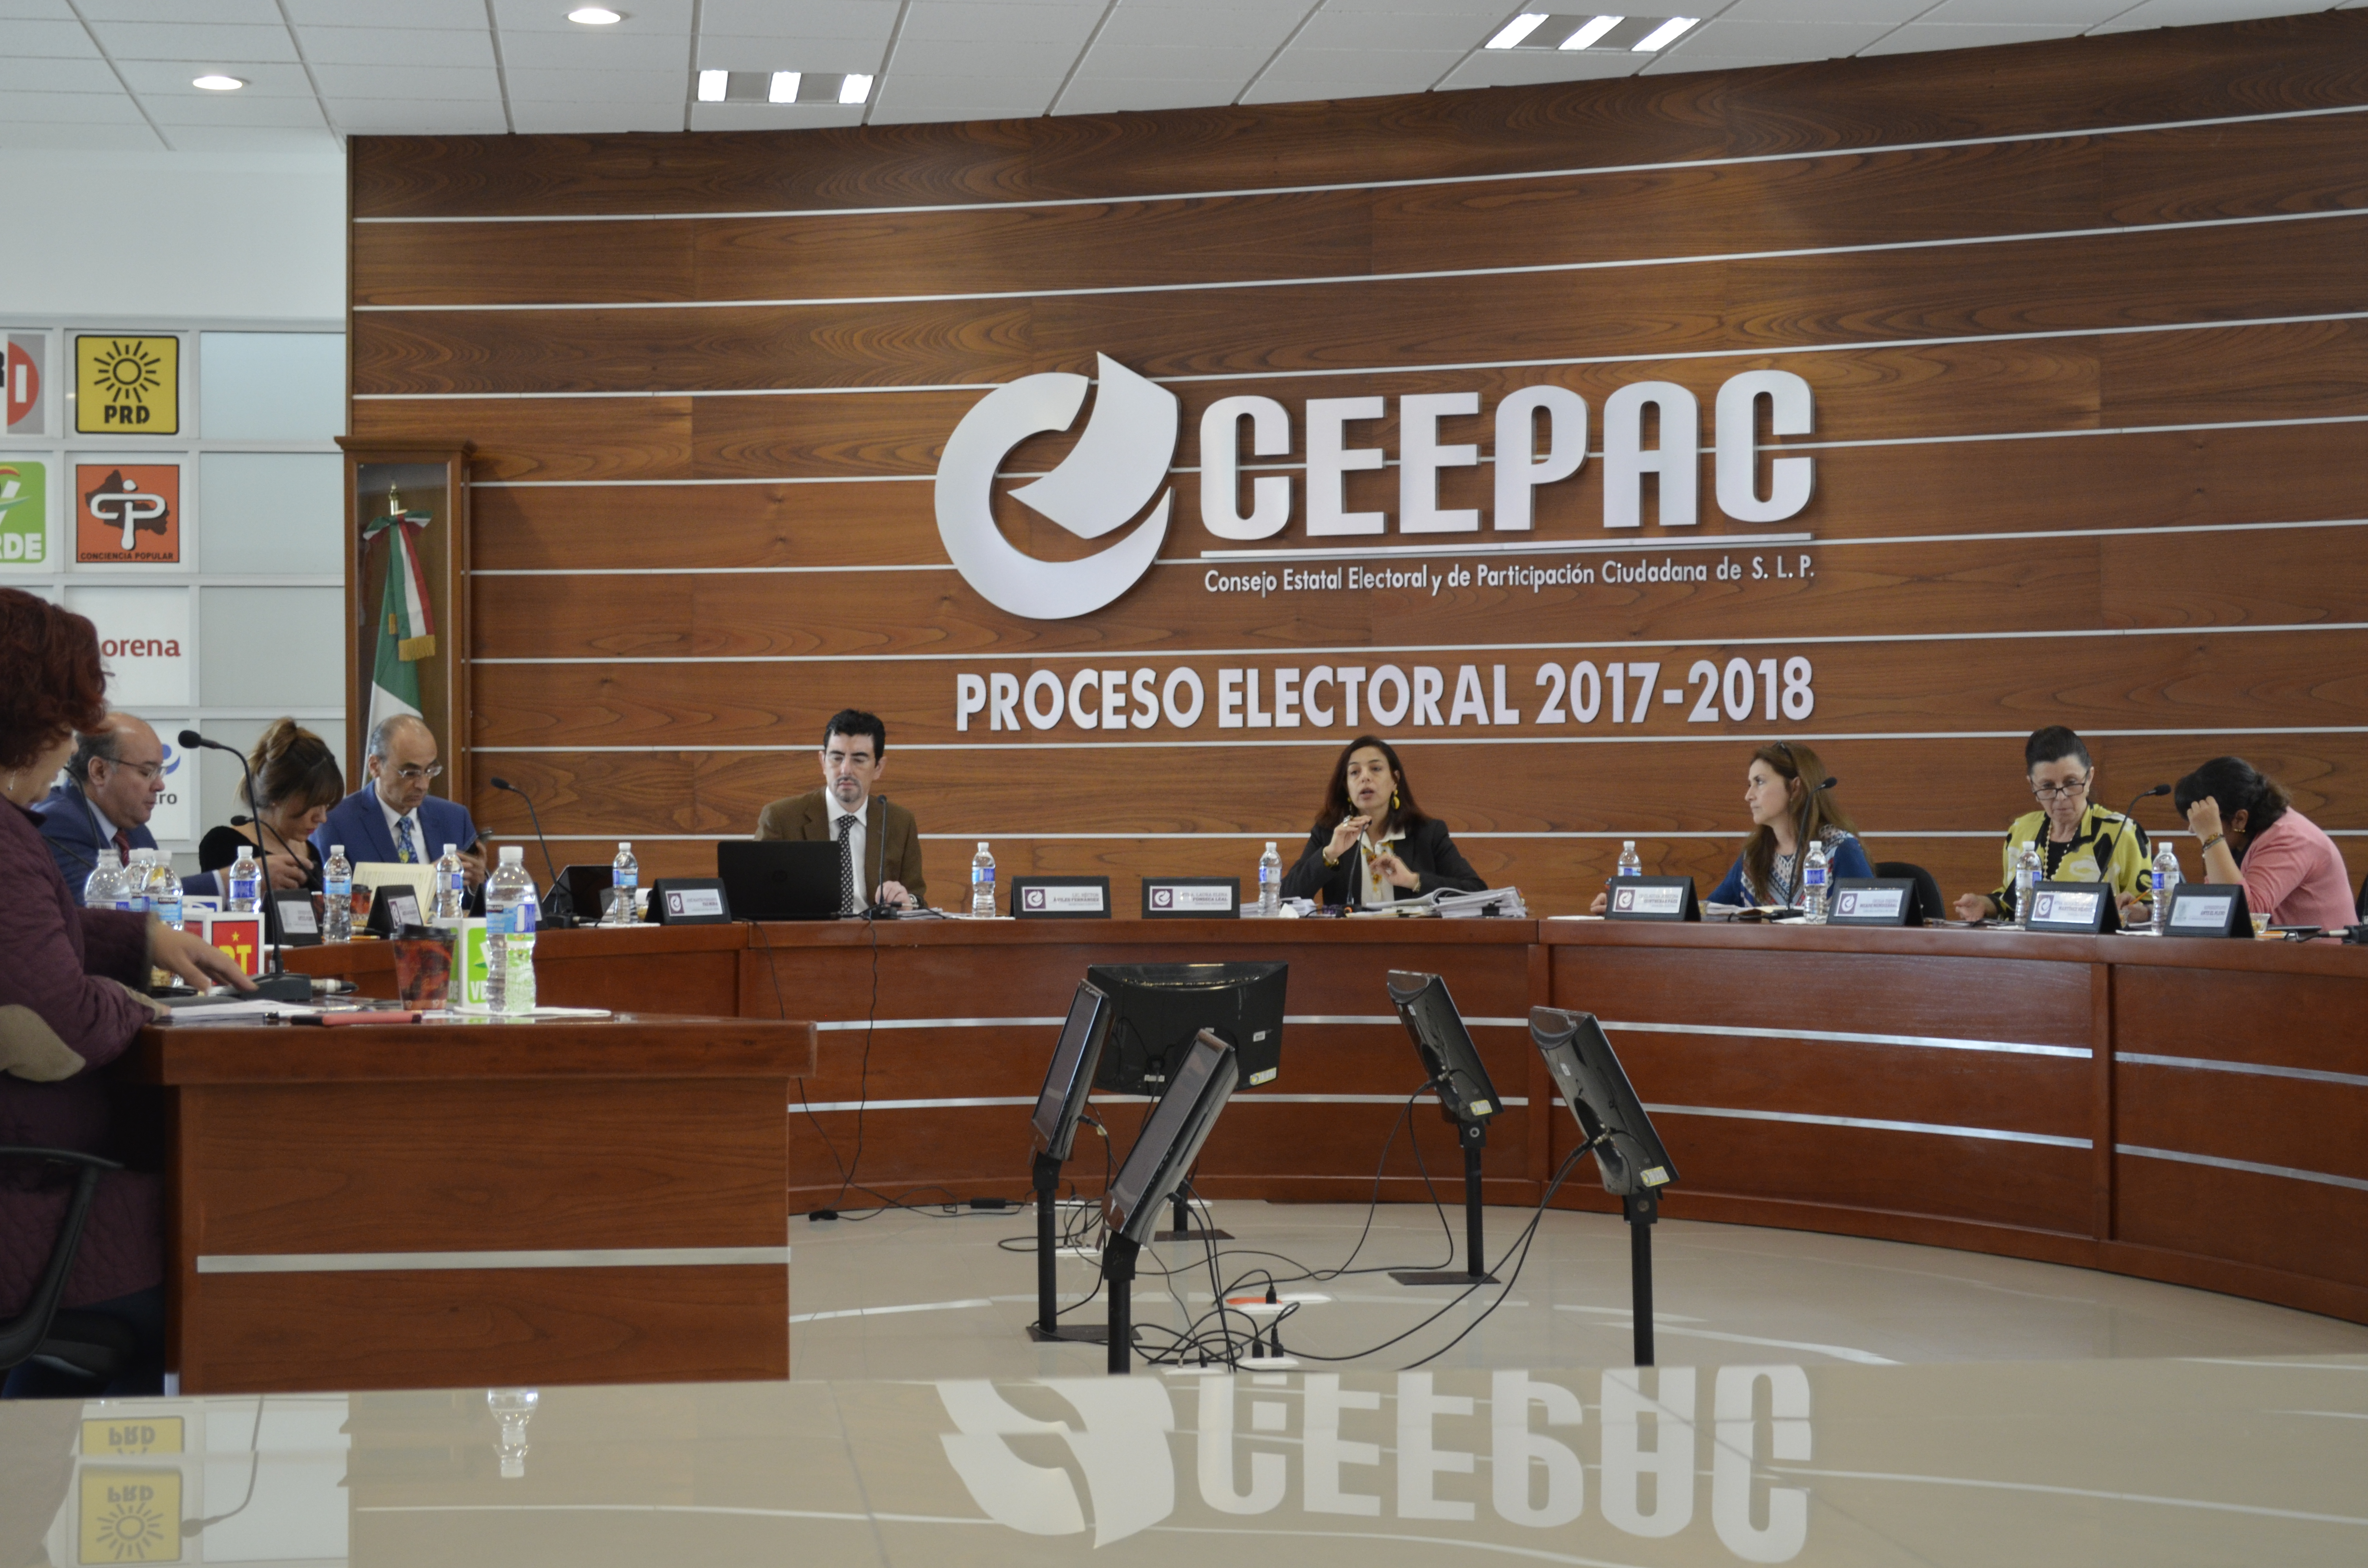  “Podan” presupuesto al CEEPAC para 2018